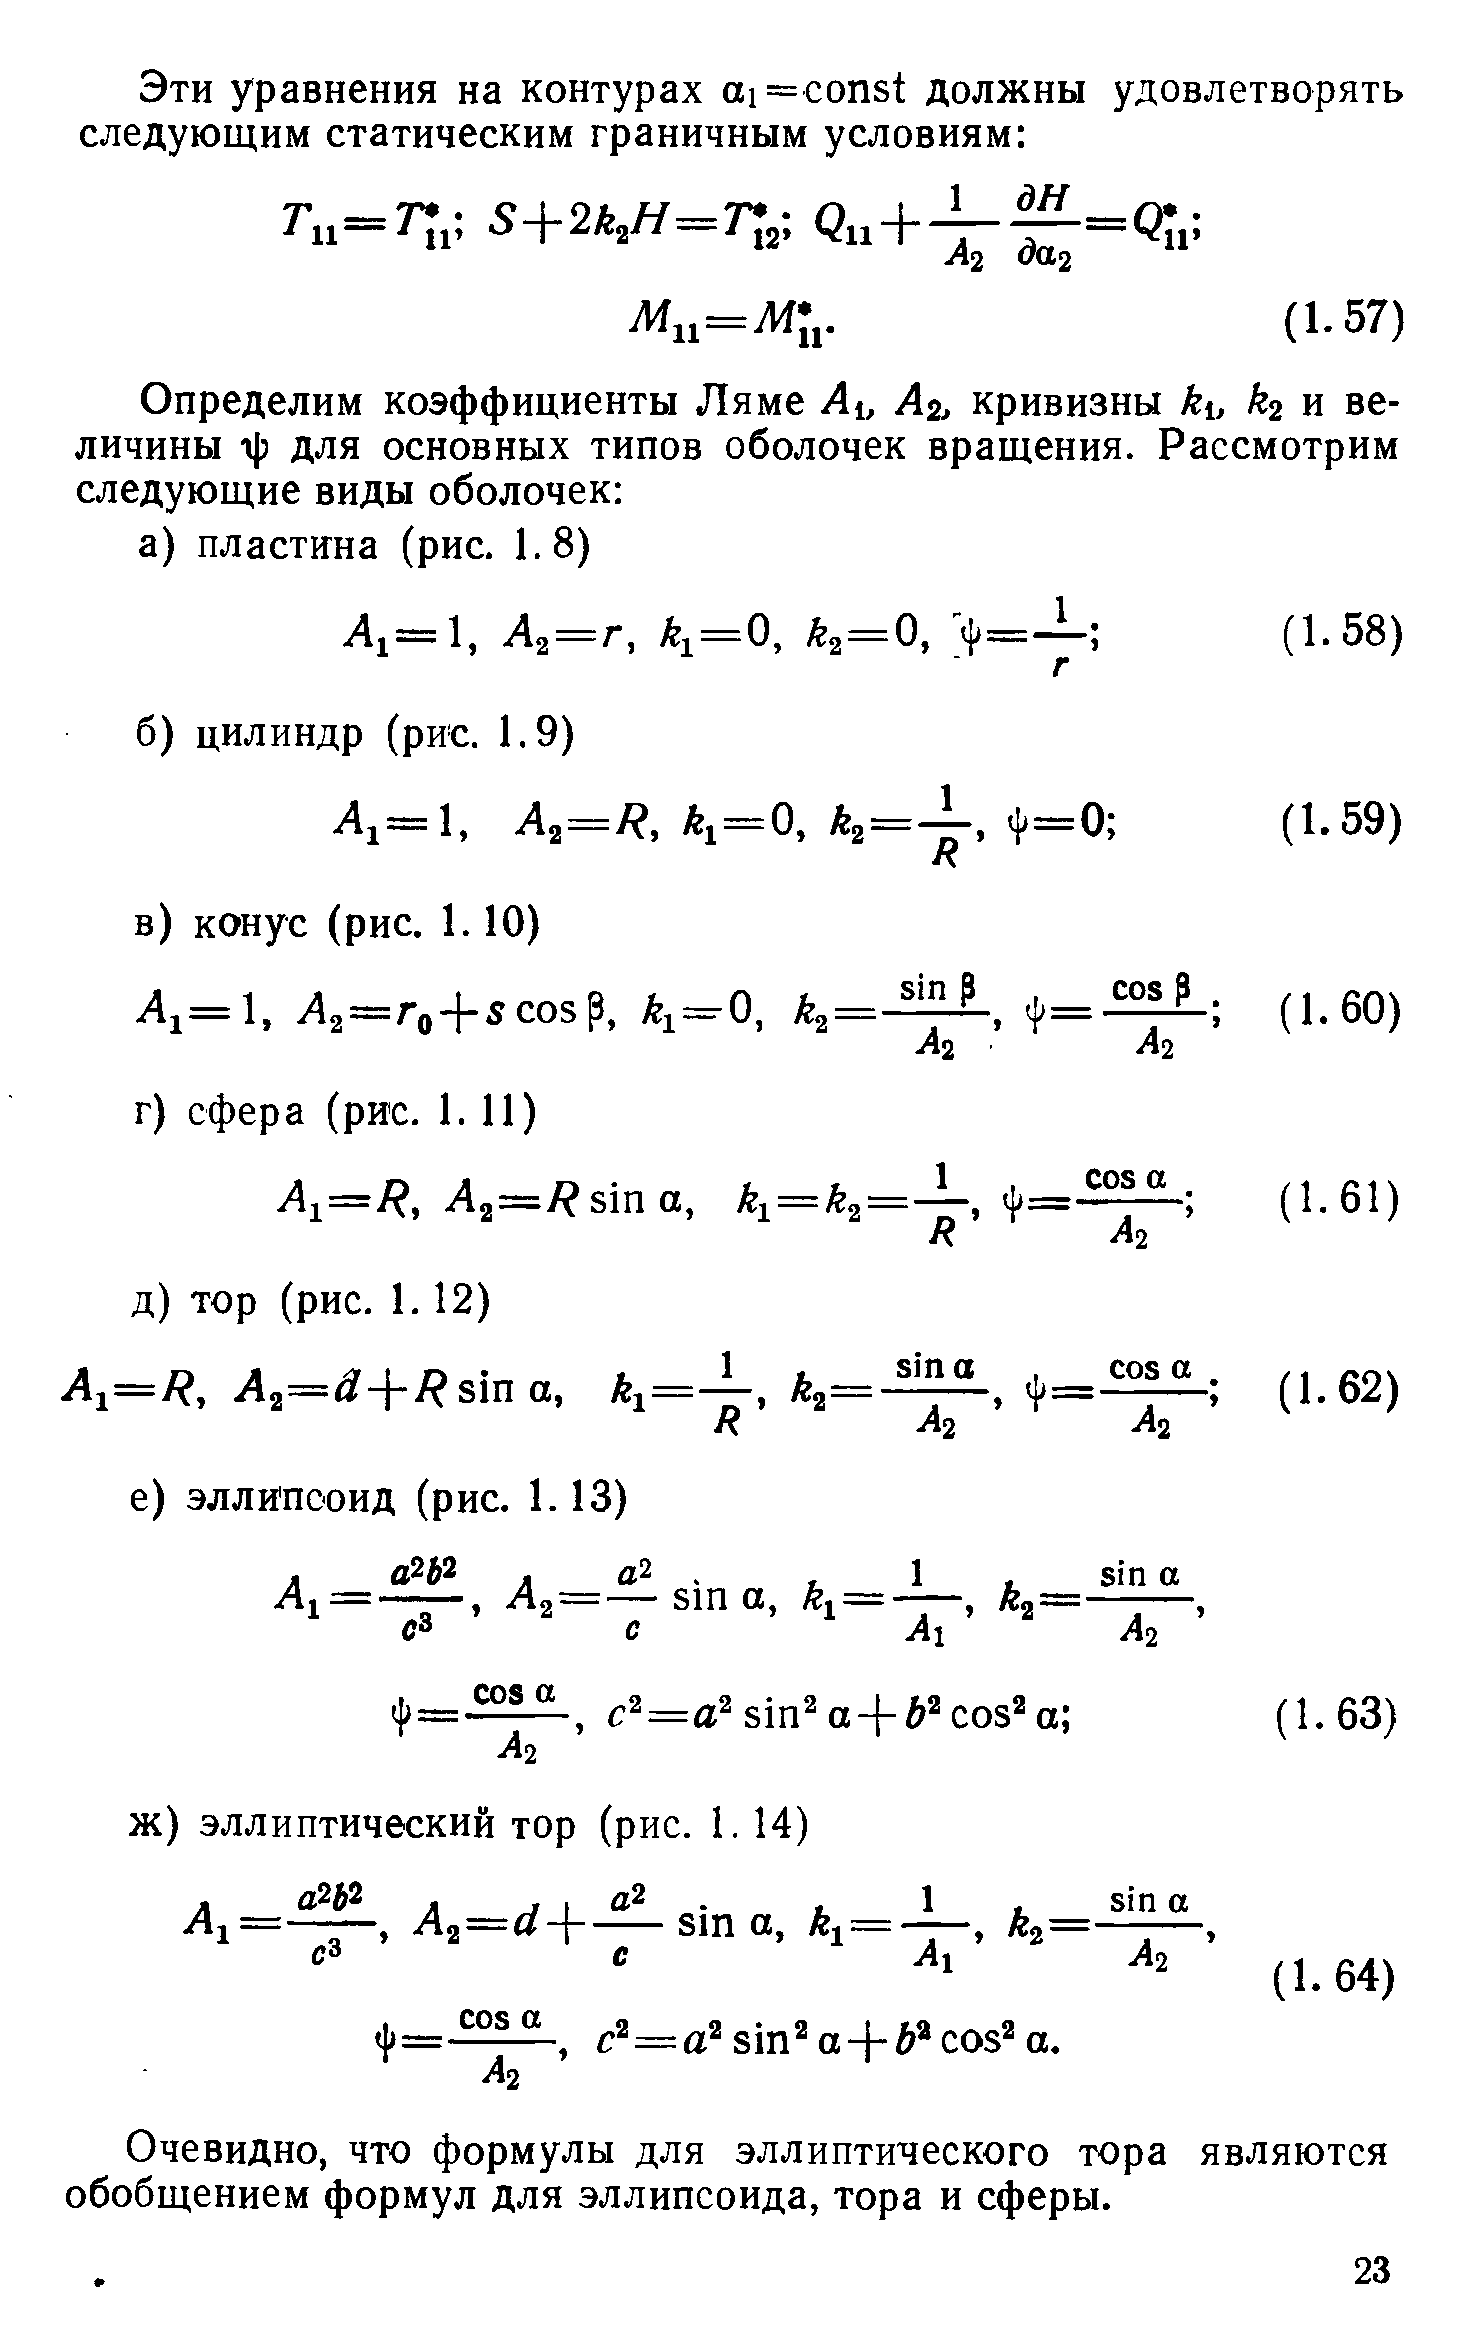 Очевидно, что формулы для эллиптического тора являются обобщением формул для эллипсоида, тора и сферы.
